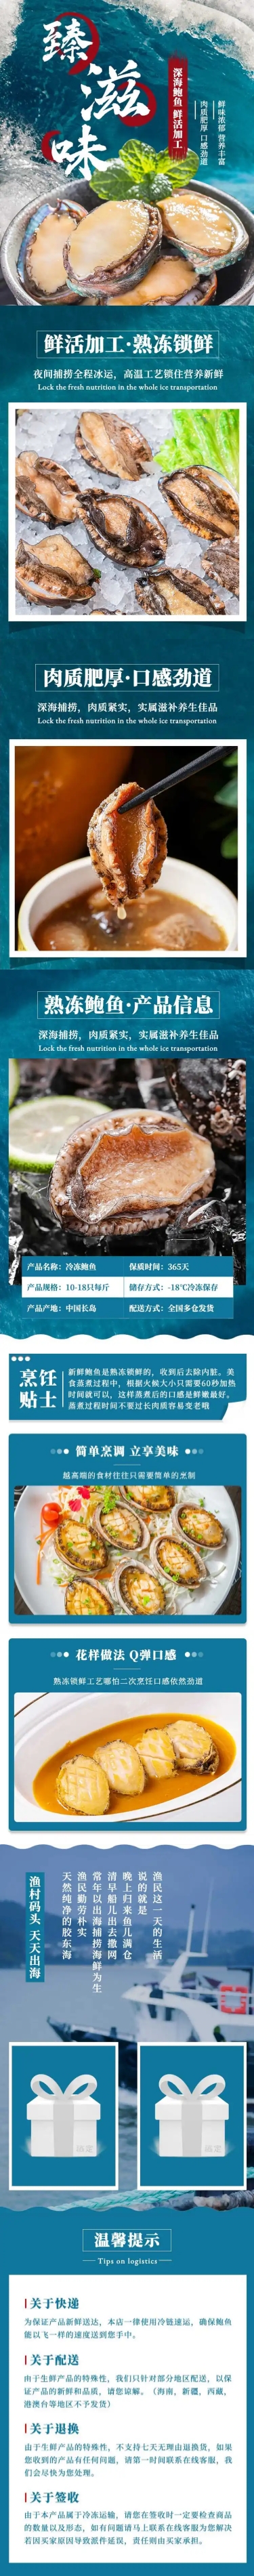 食品生鲜海鲜鲍鱼详情页预览效果